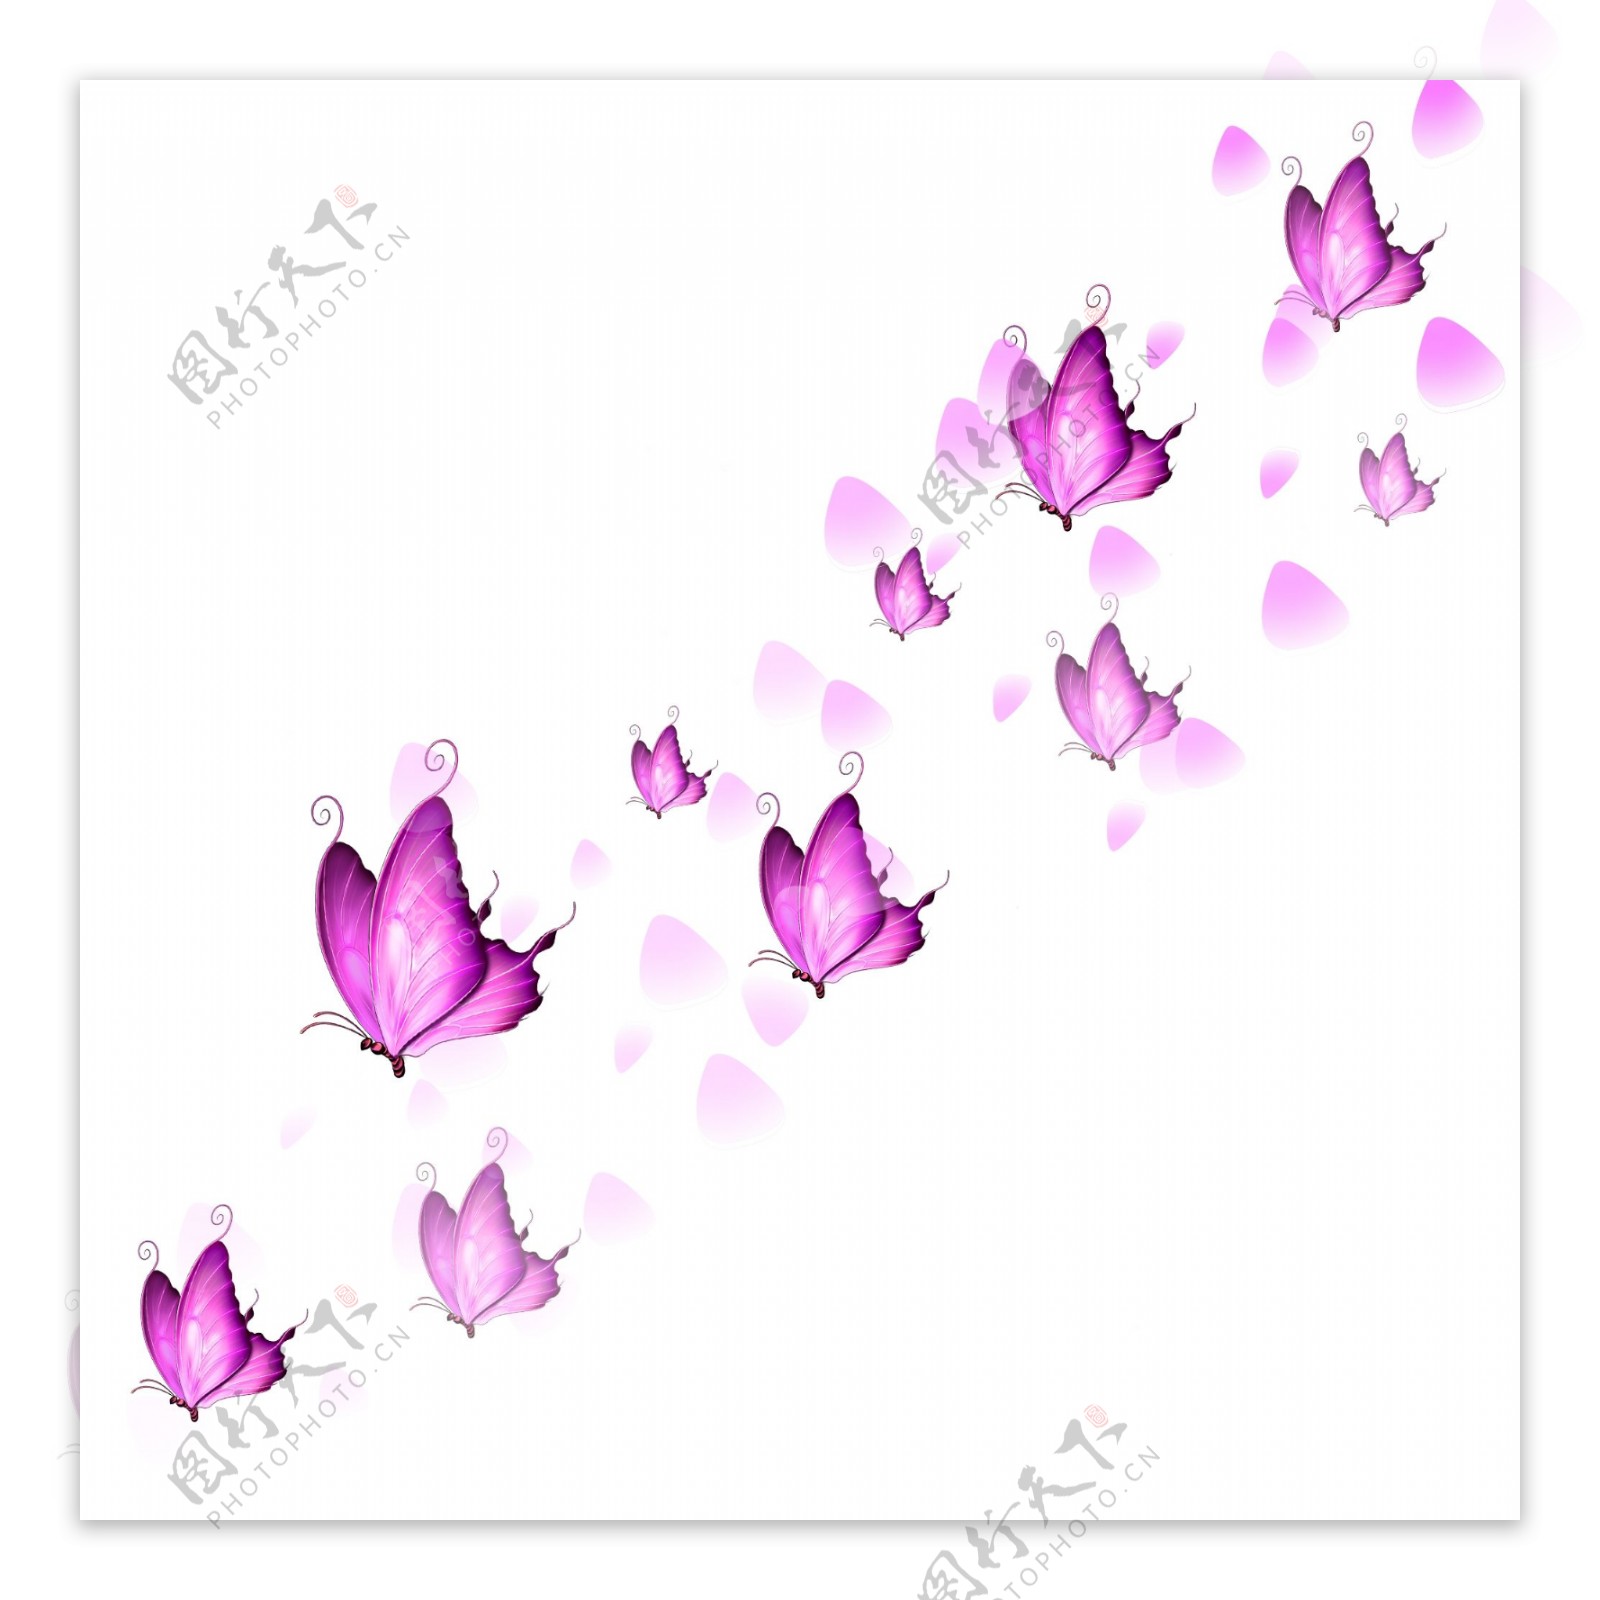 漂浮的蝴蝶之漫天飞舞的粉色蝴蝶玫瑰花瓣